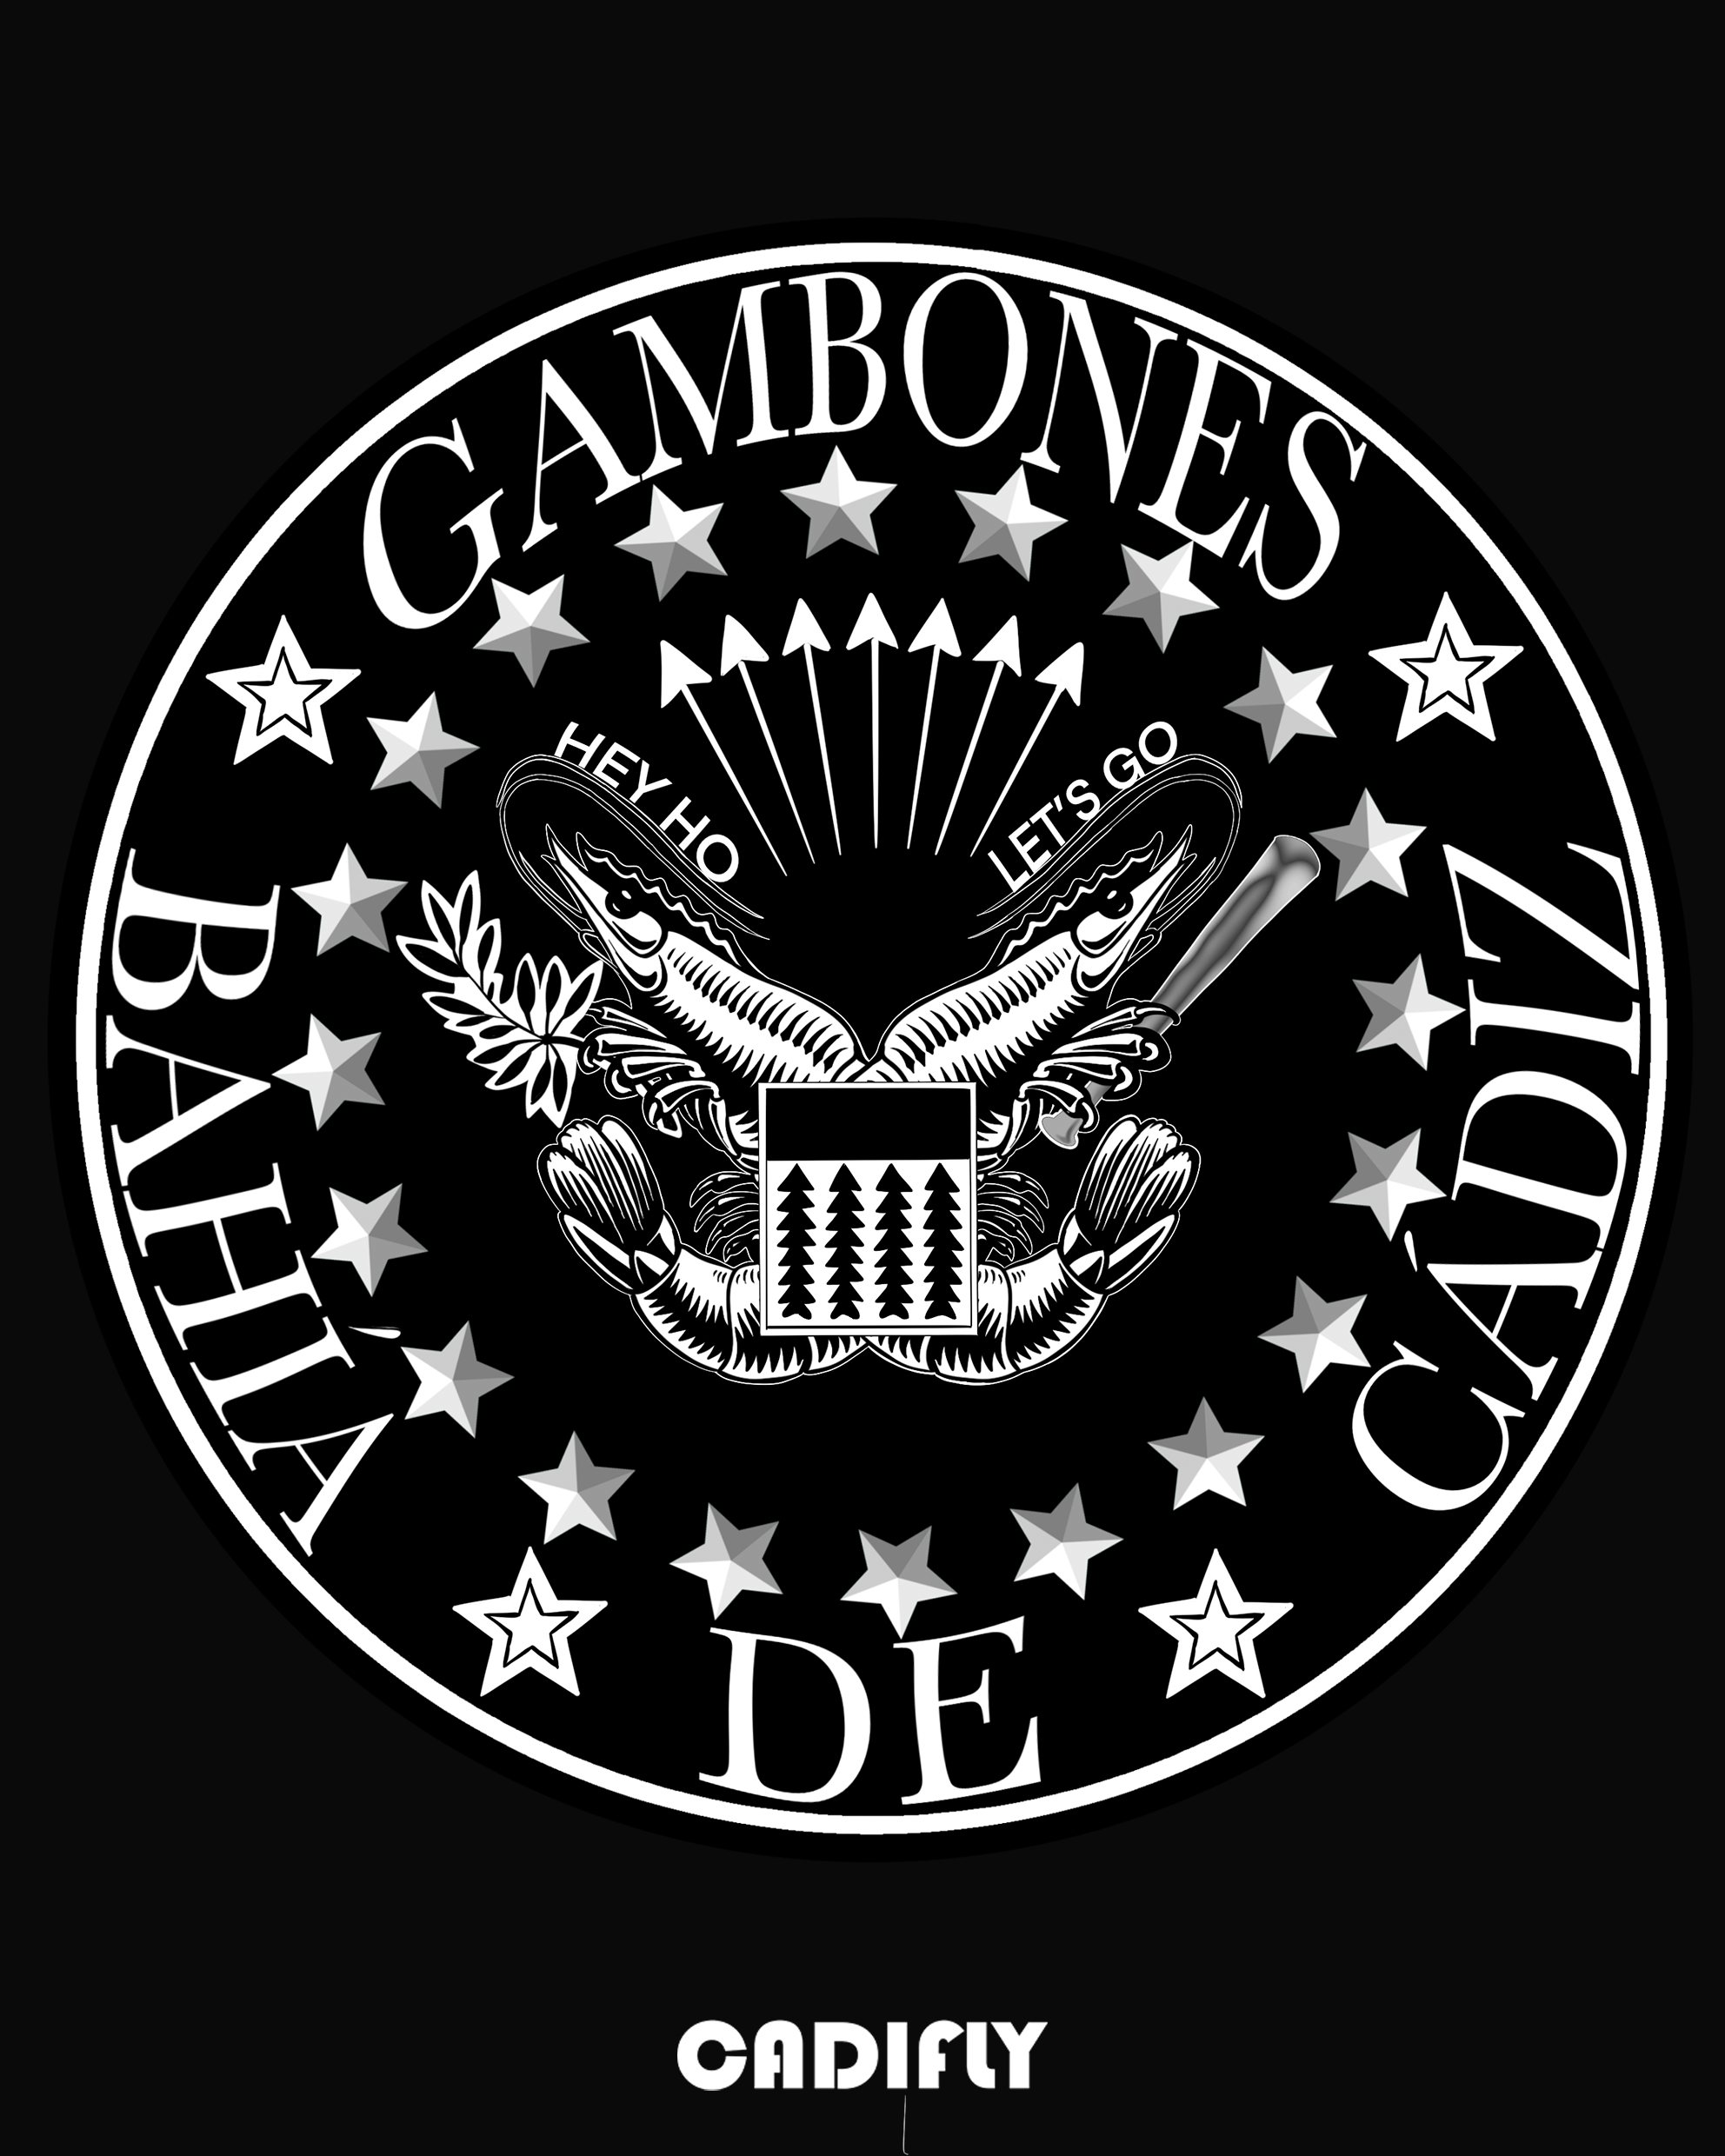 Diseño Rock con la portada de los Ramones al estilo de Cadiz